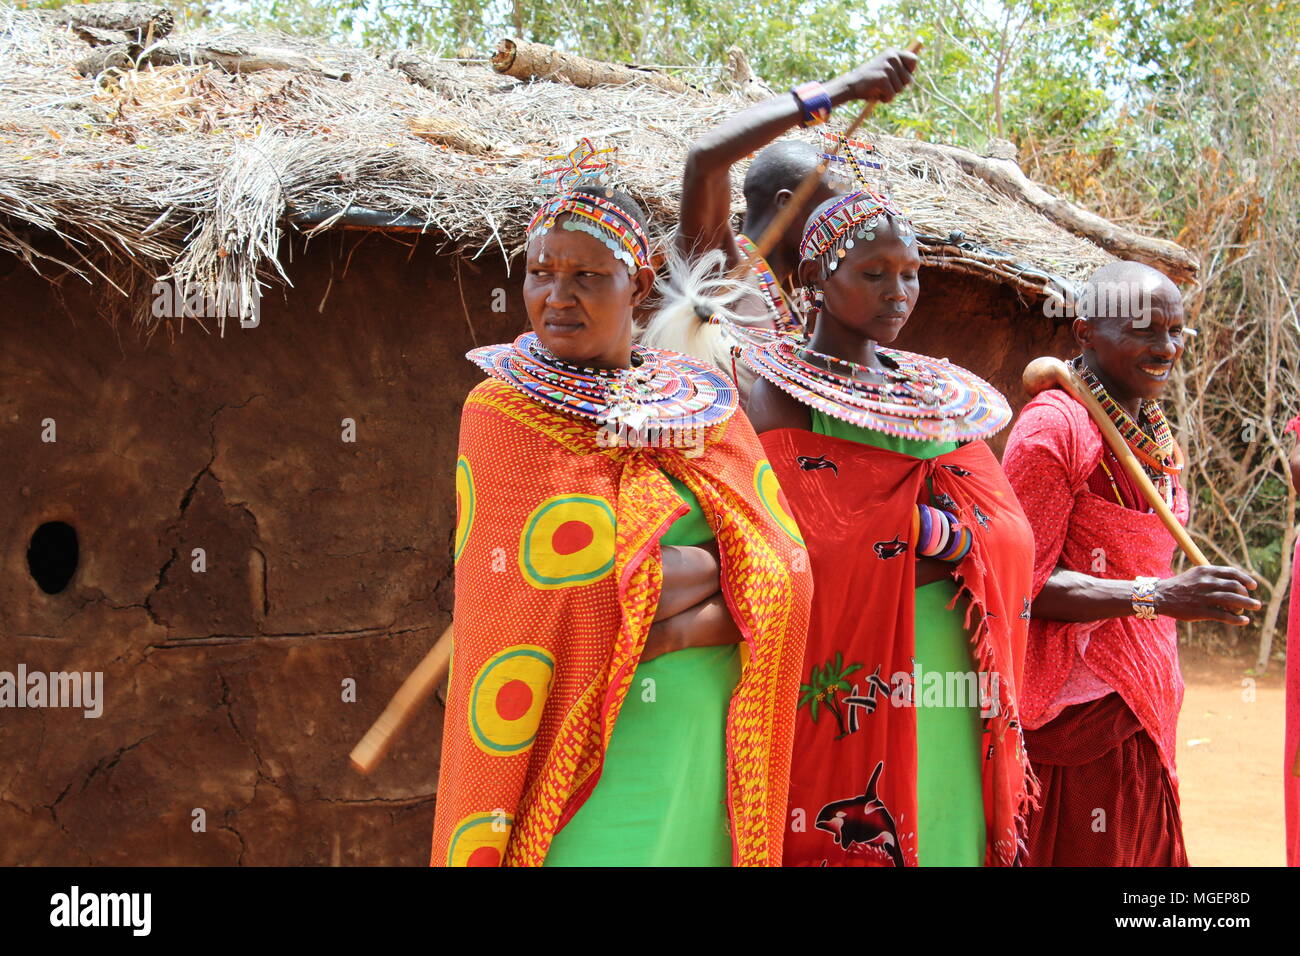 Les femmes masaï portant des robes rouges et verts colorés au cours d'un rite tribal dans un village africain au Kenya, près de Nairobi Banque D'Images